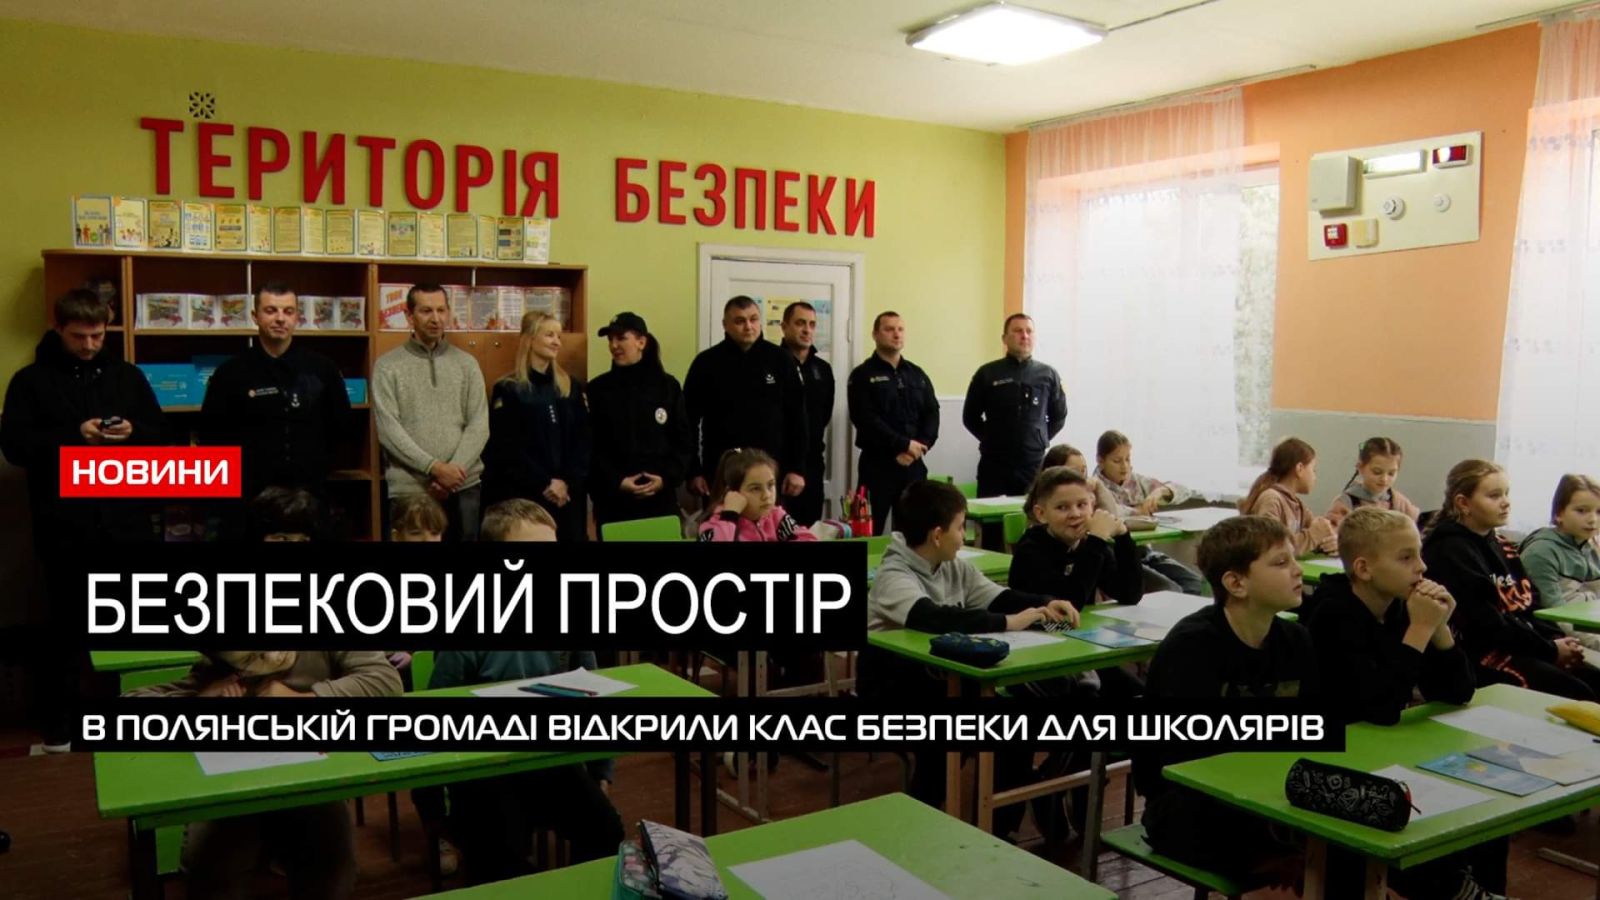  За участі рятувальників та поліції: в Полянській громаді створили територію безпеки для школярів (ВІДЕО) 0